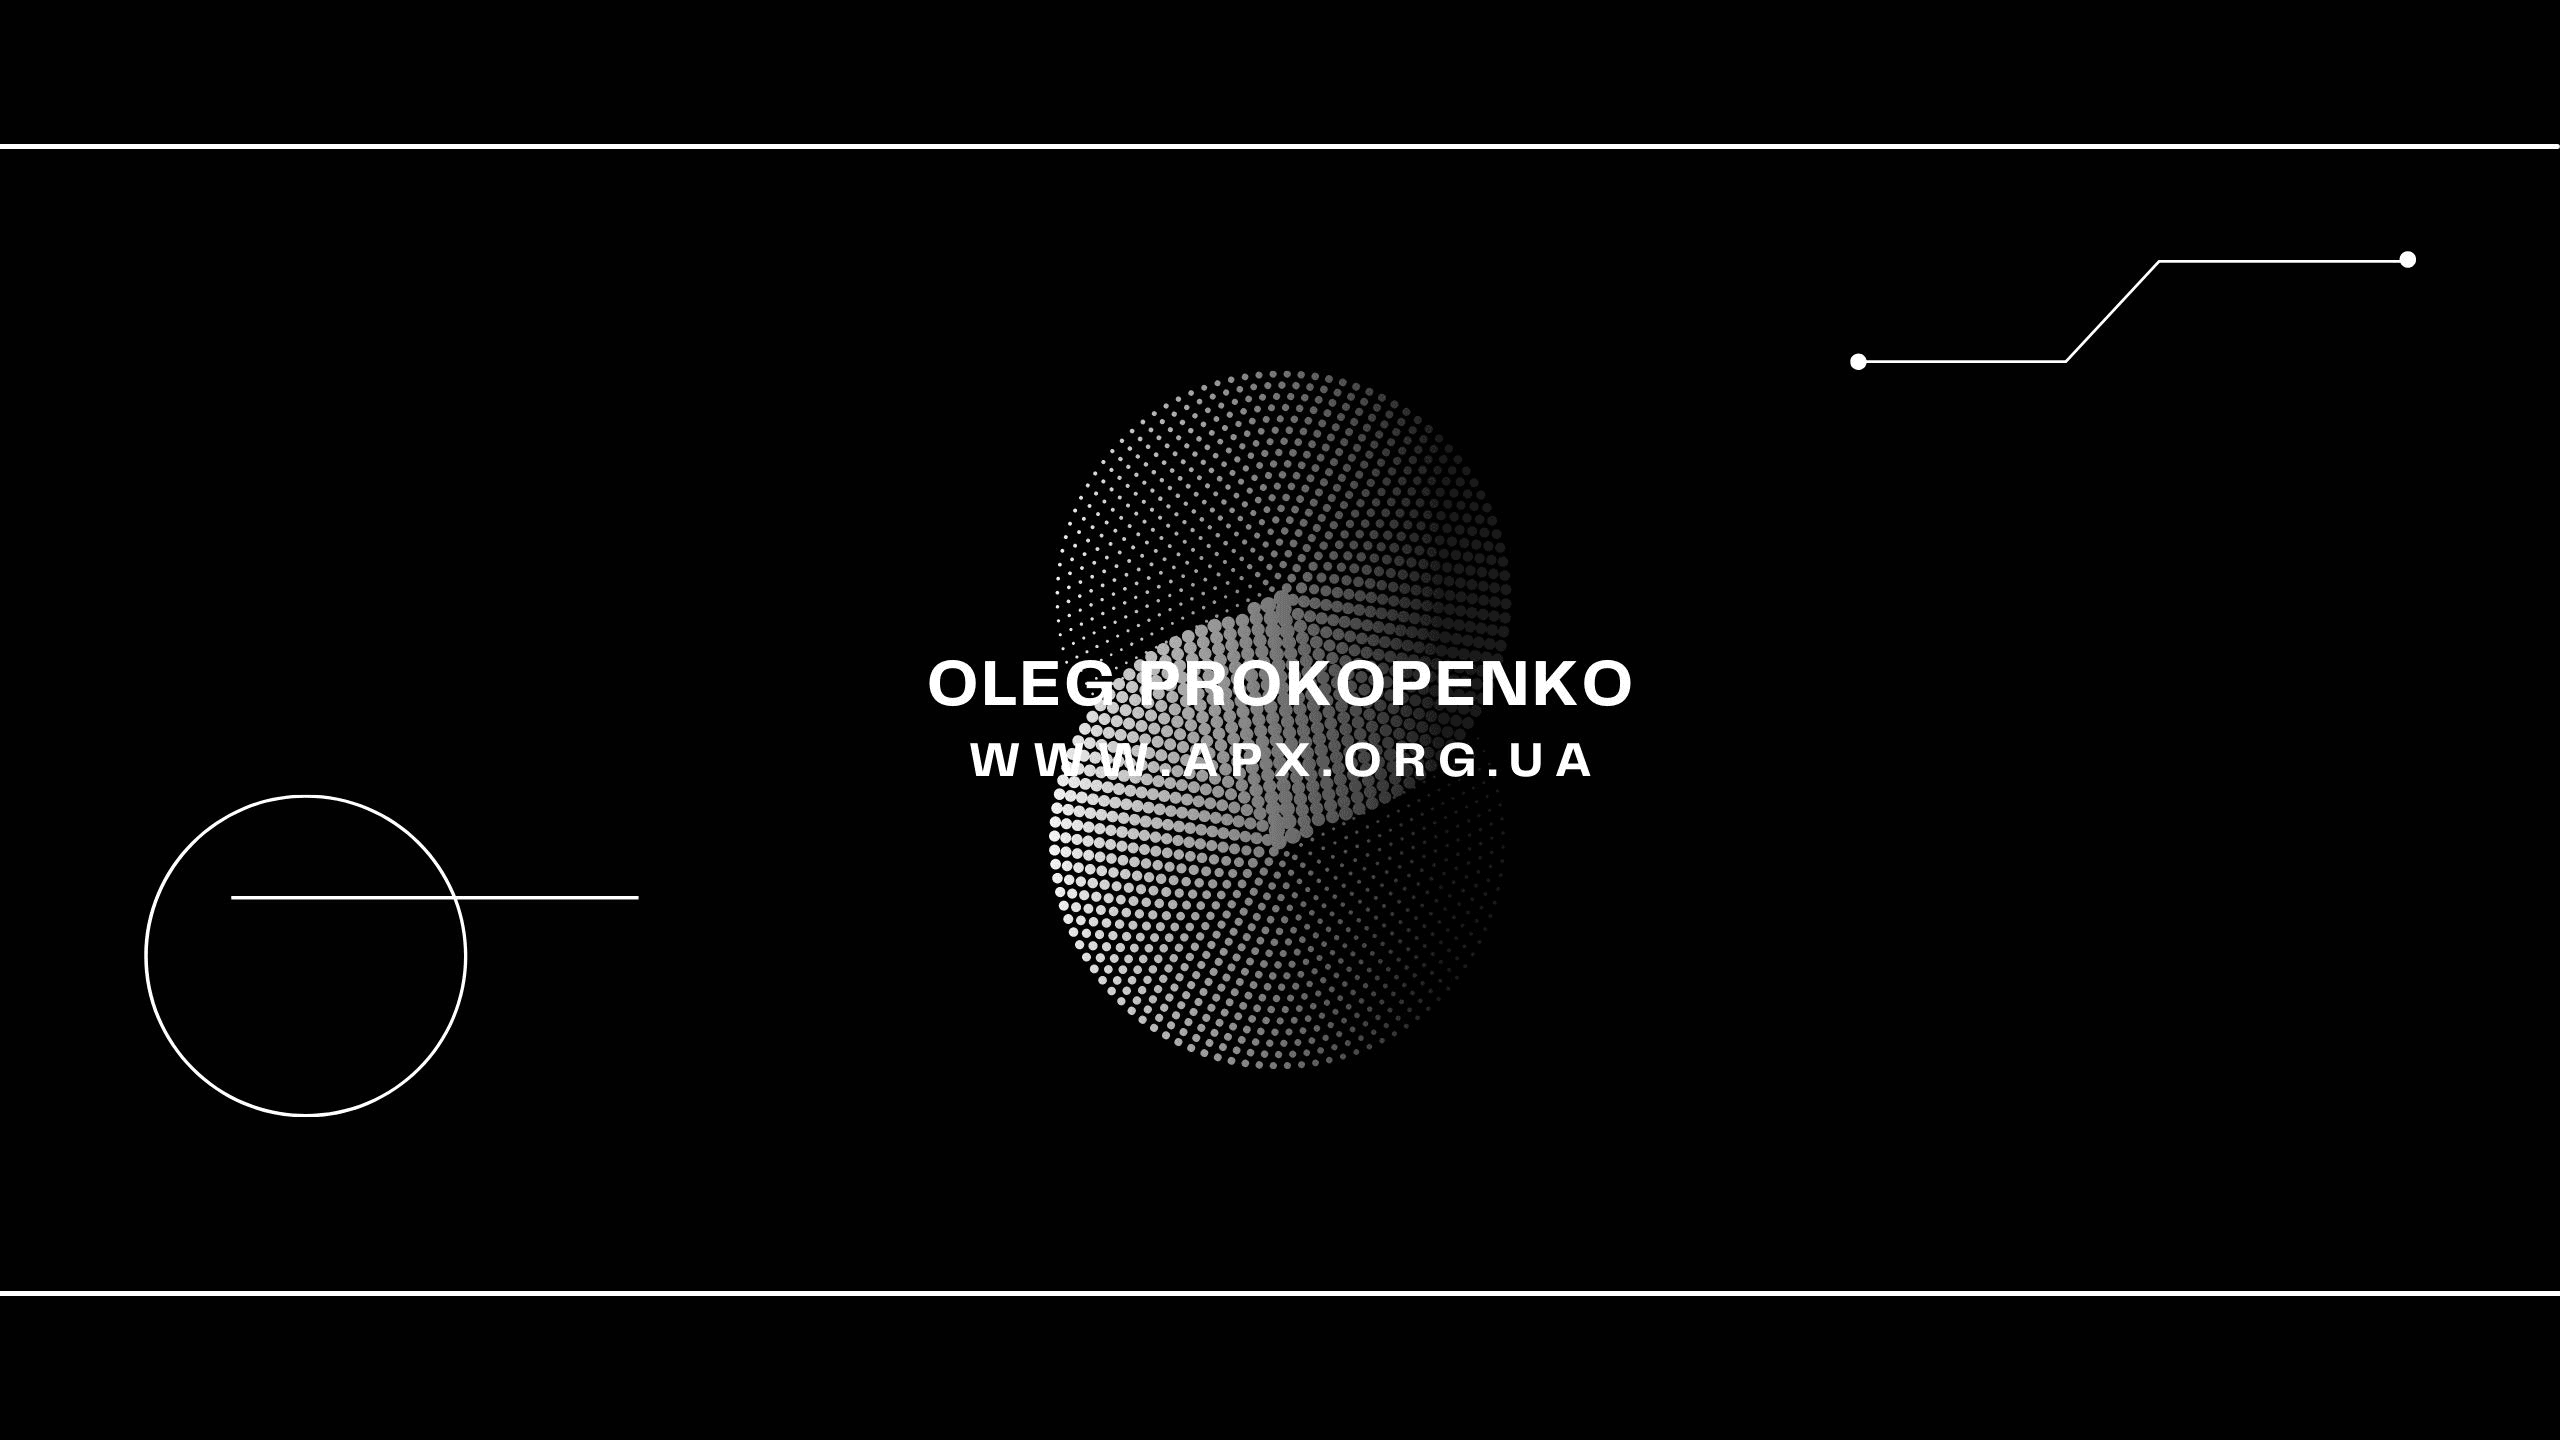 Prokopenko banner